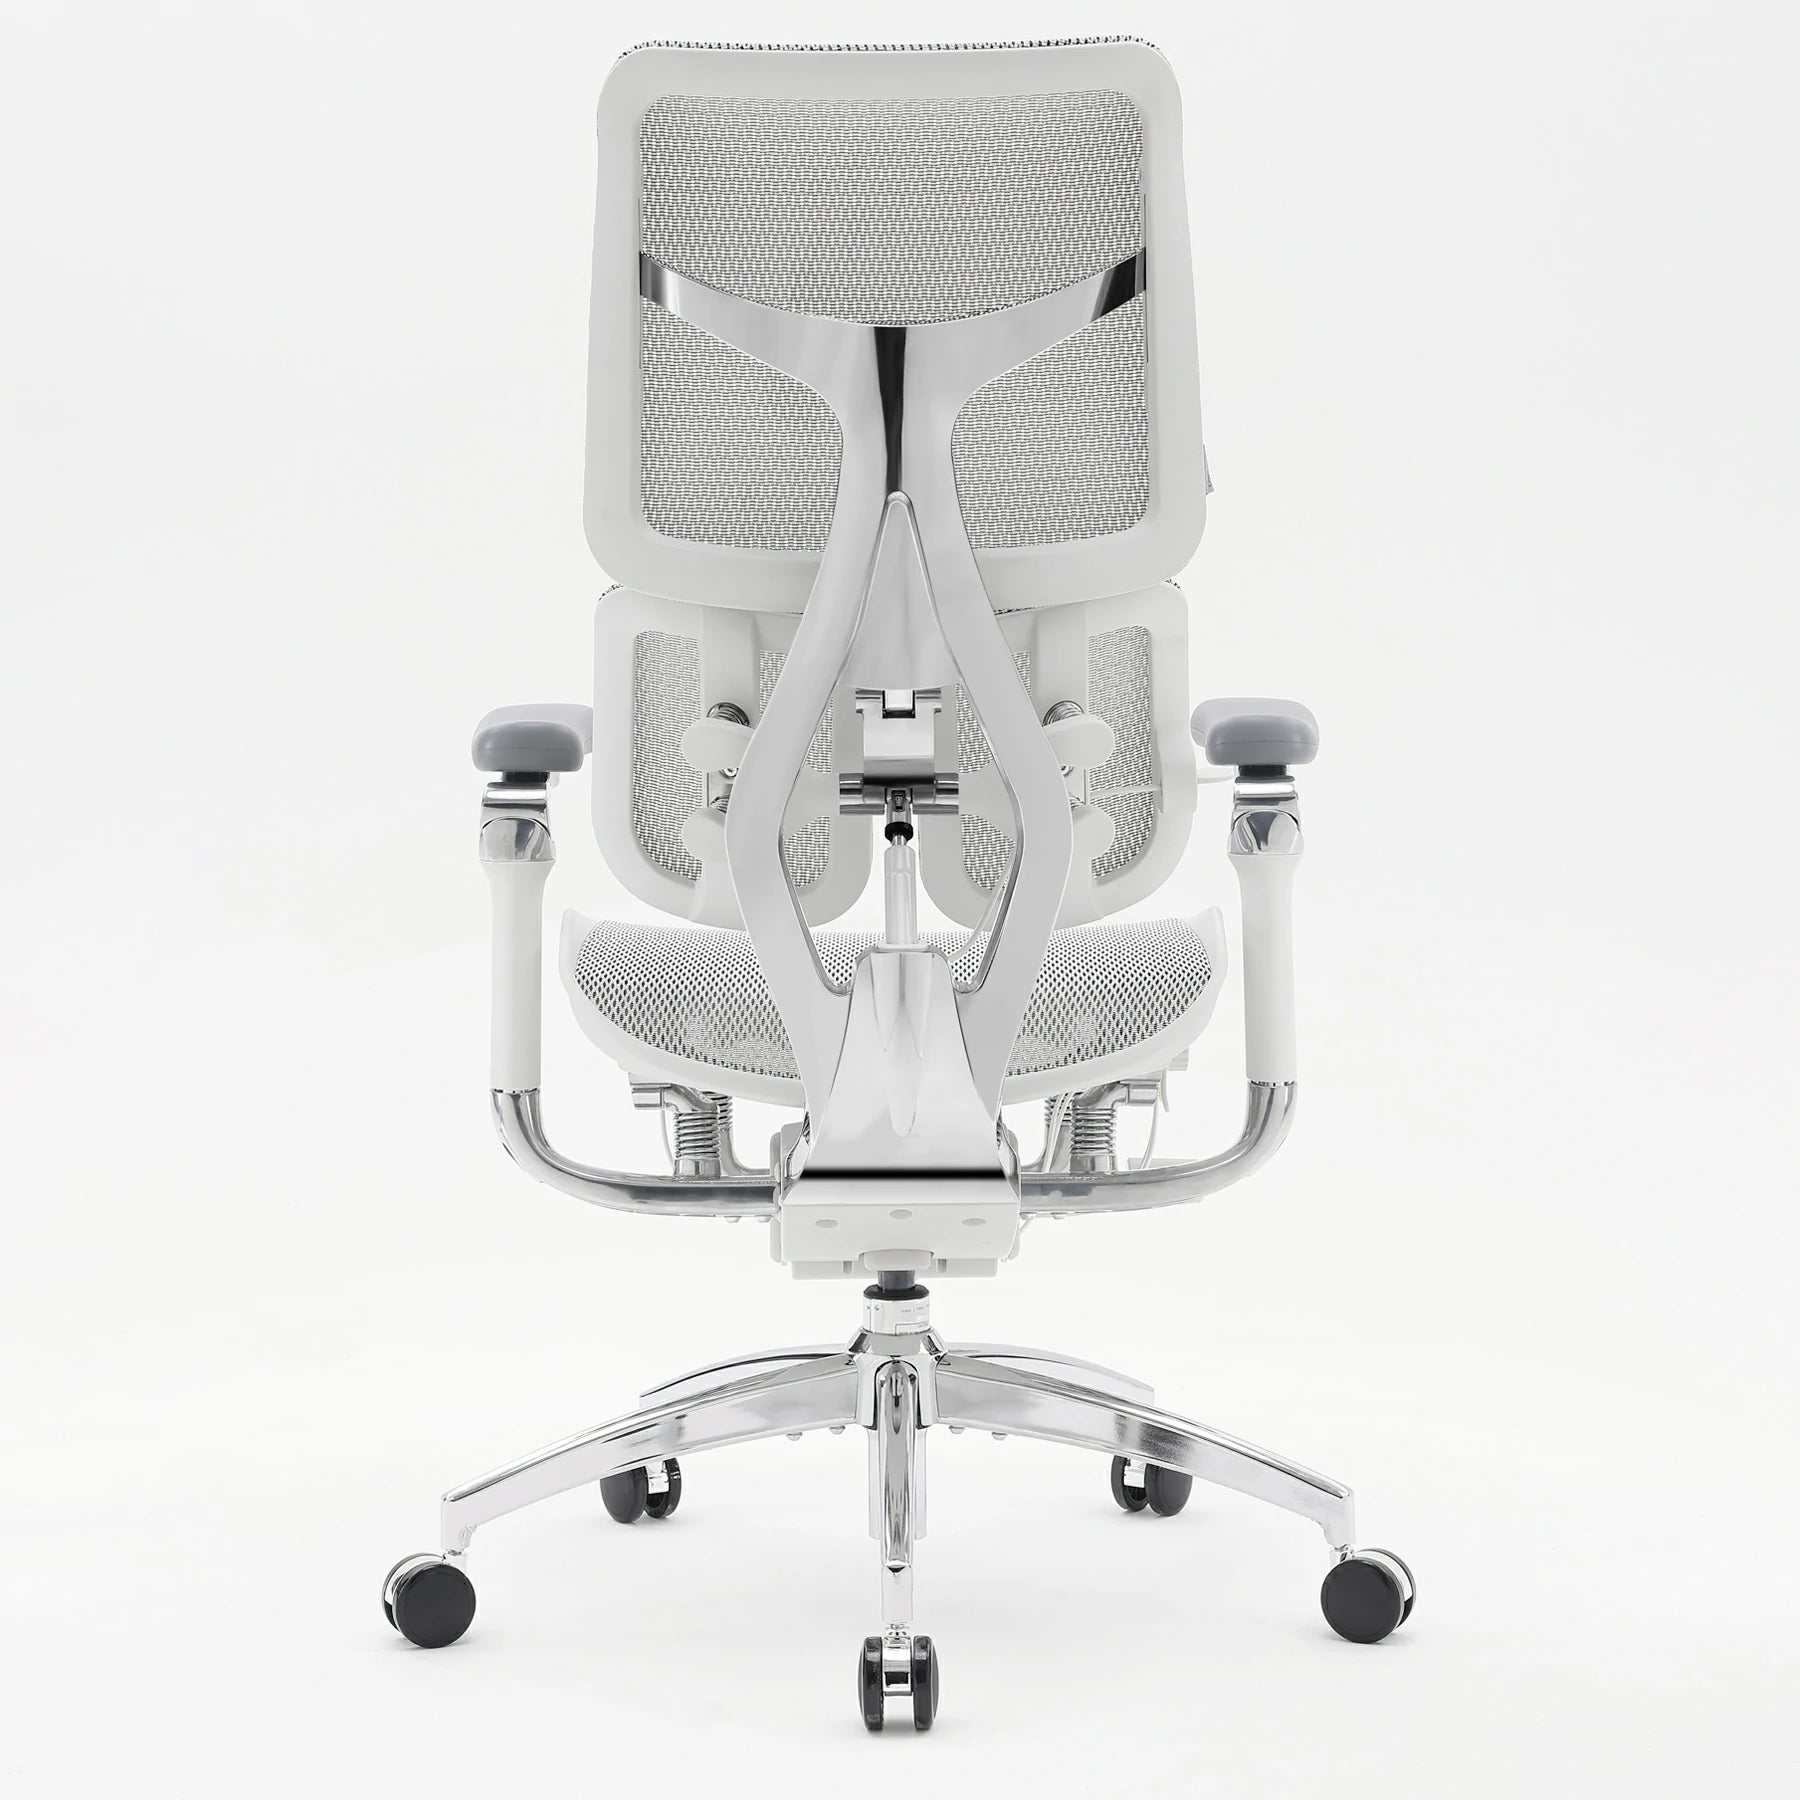 <tc>Sihoo Doro S300 chaise ergonomique «Gravity-Defying»</tc>